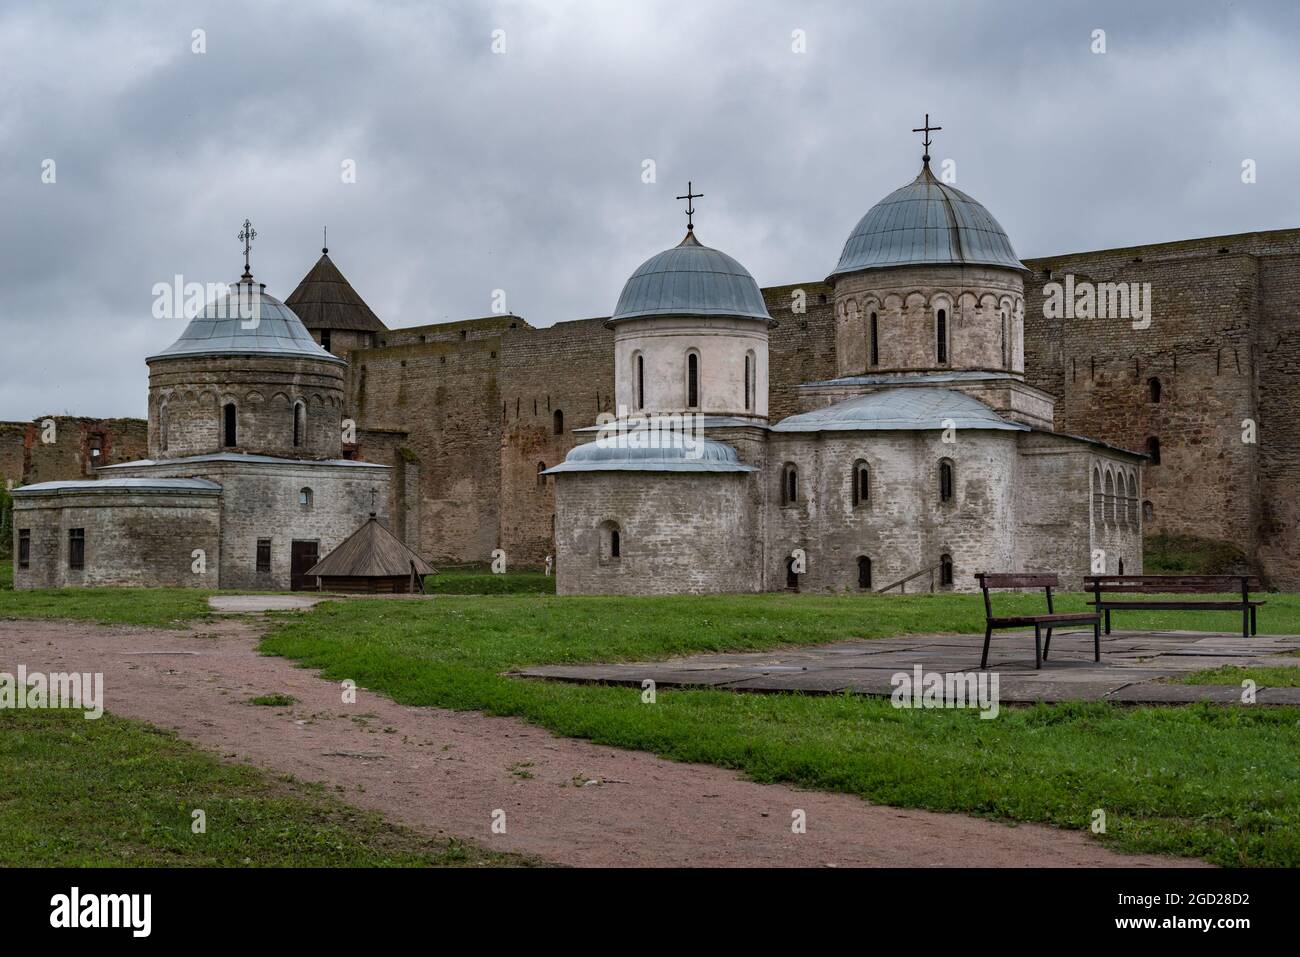 L'ancienne église Saint-Nicolas et l'église de Dormition de la mère de Dieu sur le territoire de la forteresse d'Ivangorod qui a été construite en 1492. Ivangorod, Ru Banque D'Images